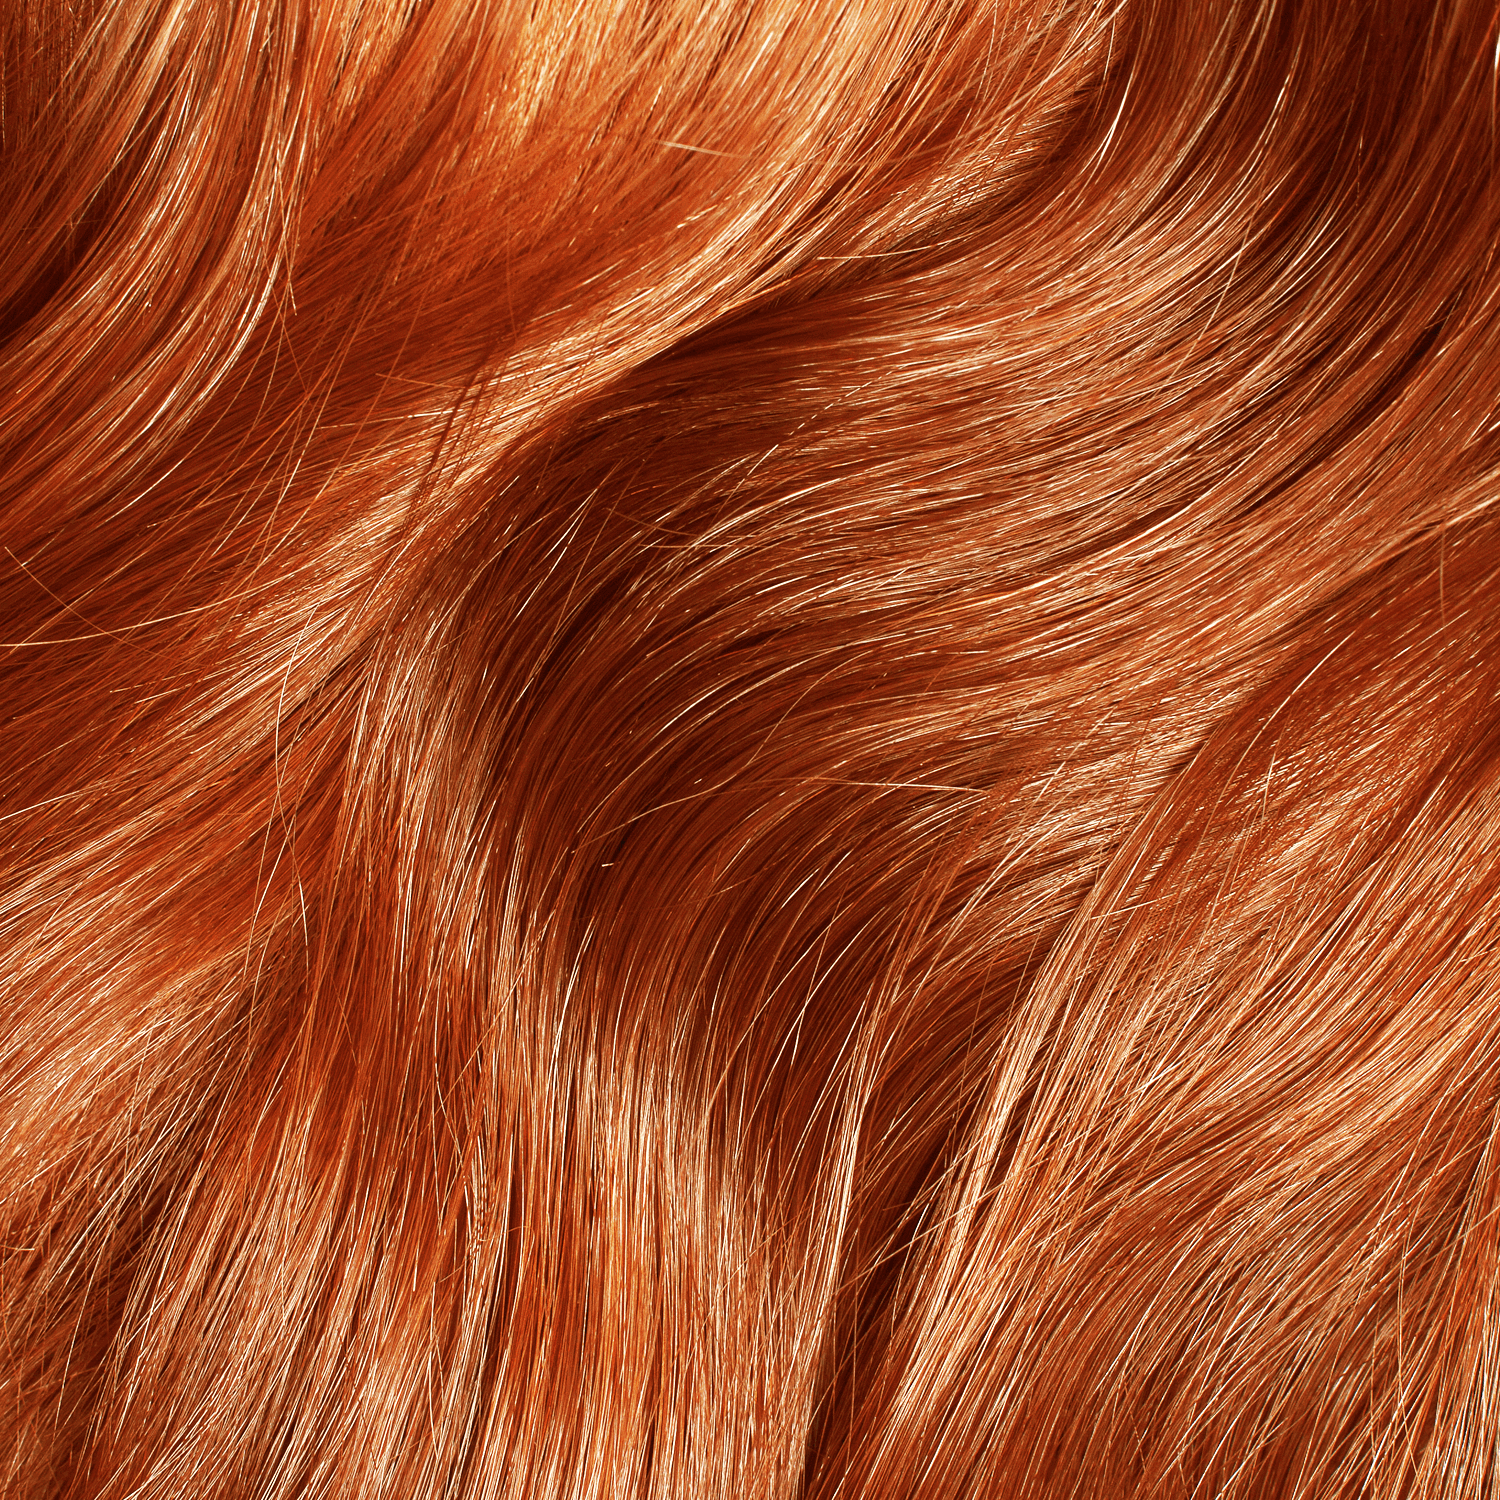 ion rose quartz semi permanent hair color